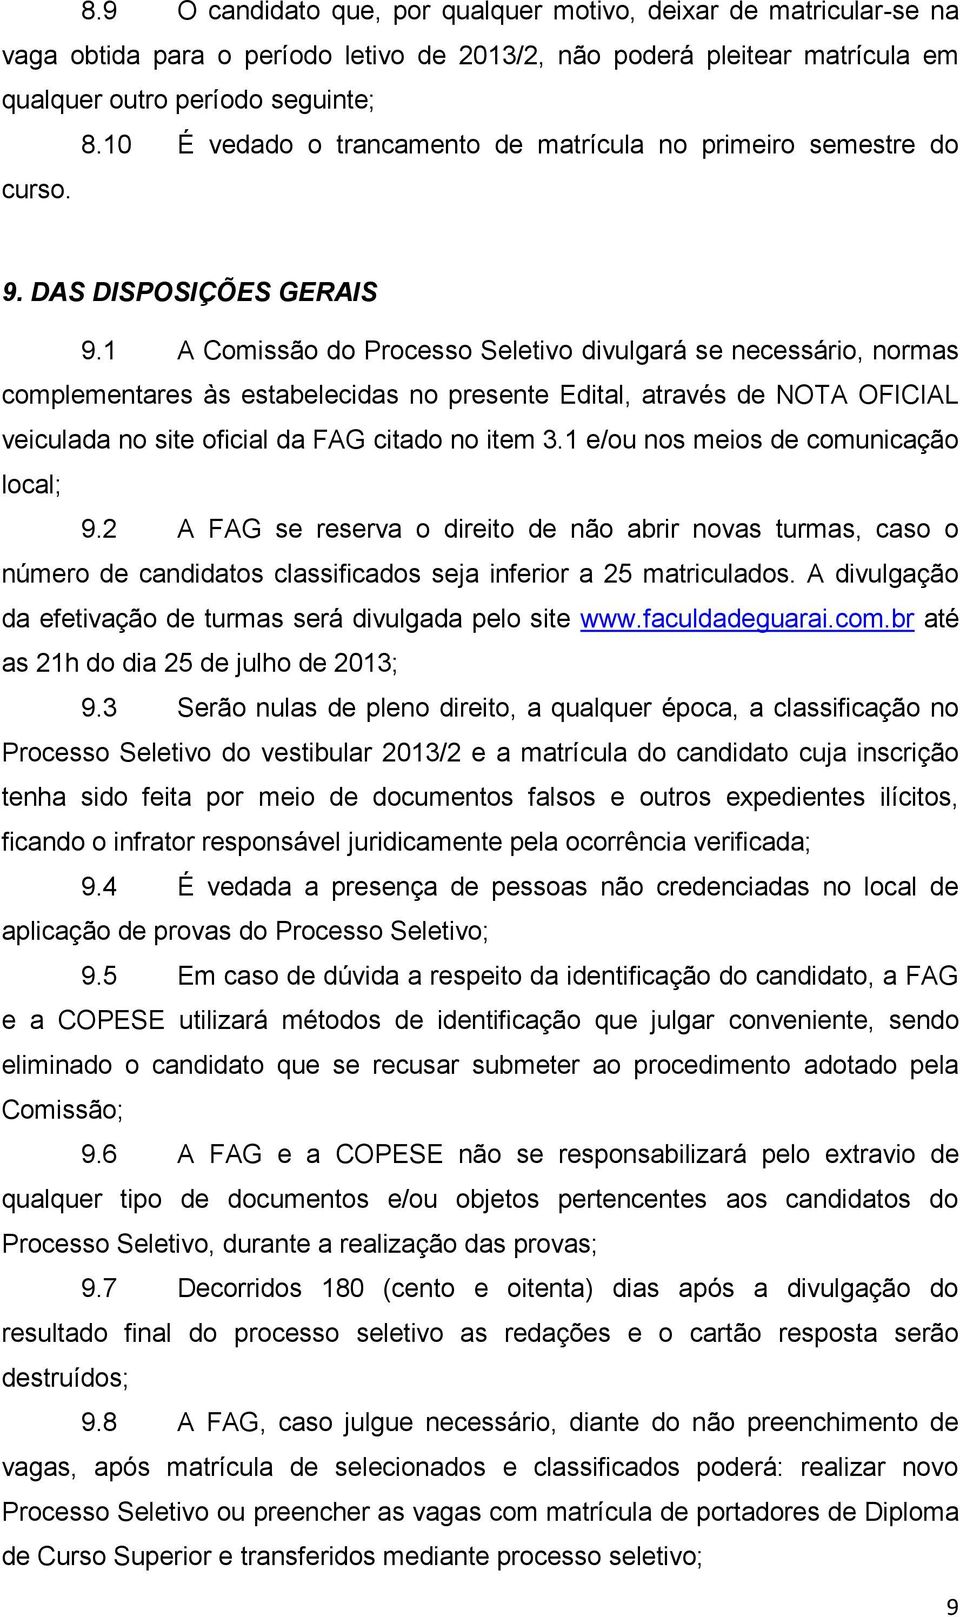 1 A Comissão do Processo Seletivo divulgará se necessário, normas complementares às estabelecidas no presente Edital, através de NOTA OFICIAL veiculada no site oficial da FAG citado no item 3.